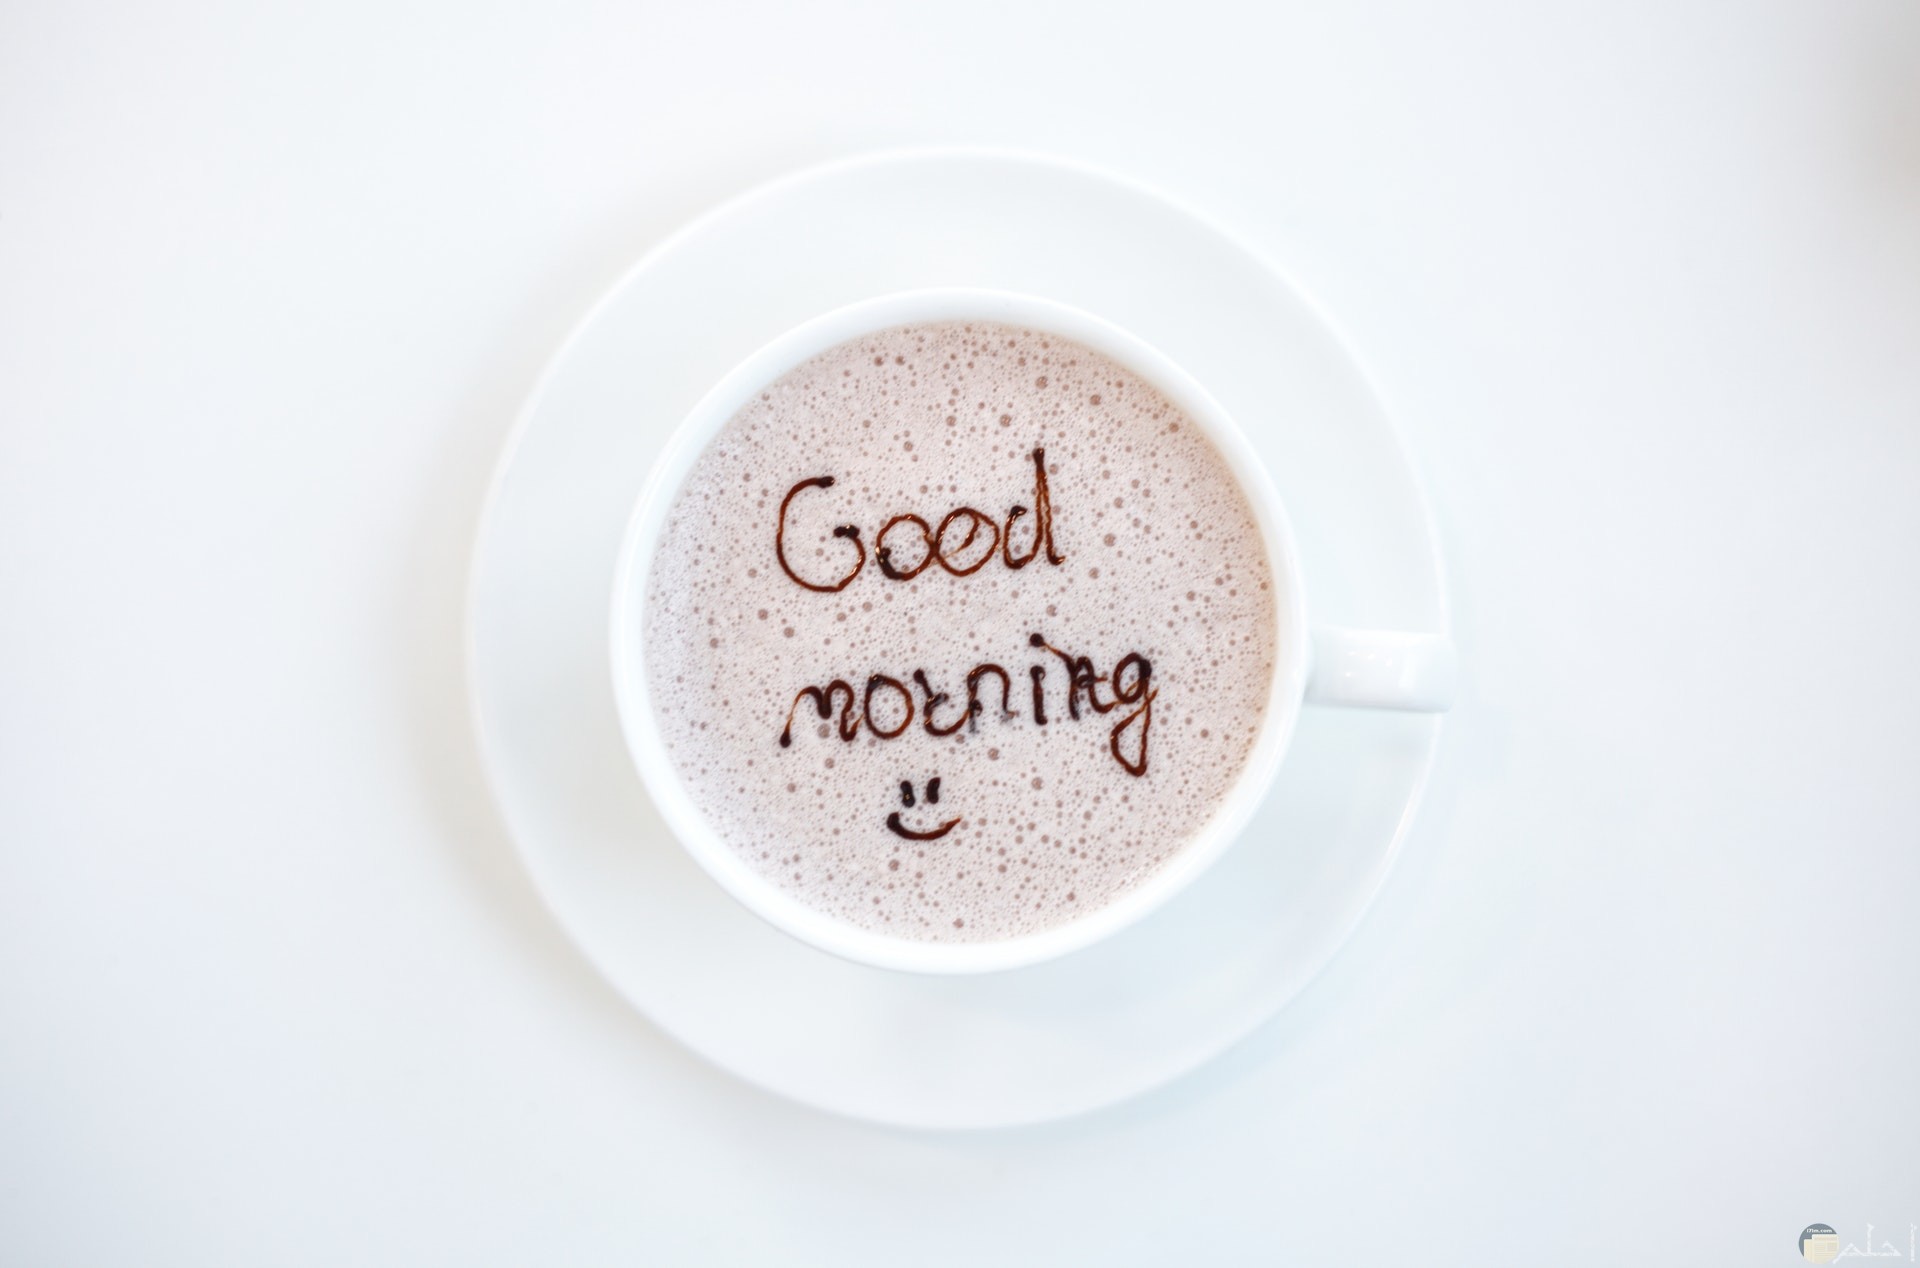 صورة لتحية الصباح بالإنكليزية مكتوبة داخل فنجان القهوة معها ايموشن مبتسم